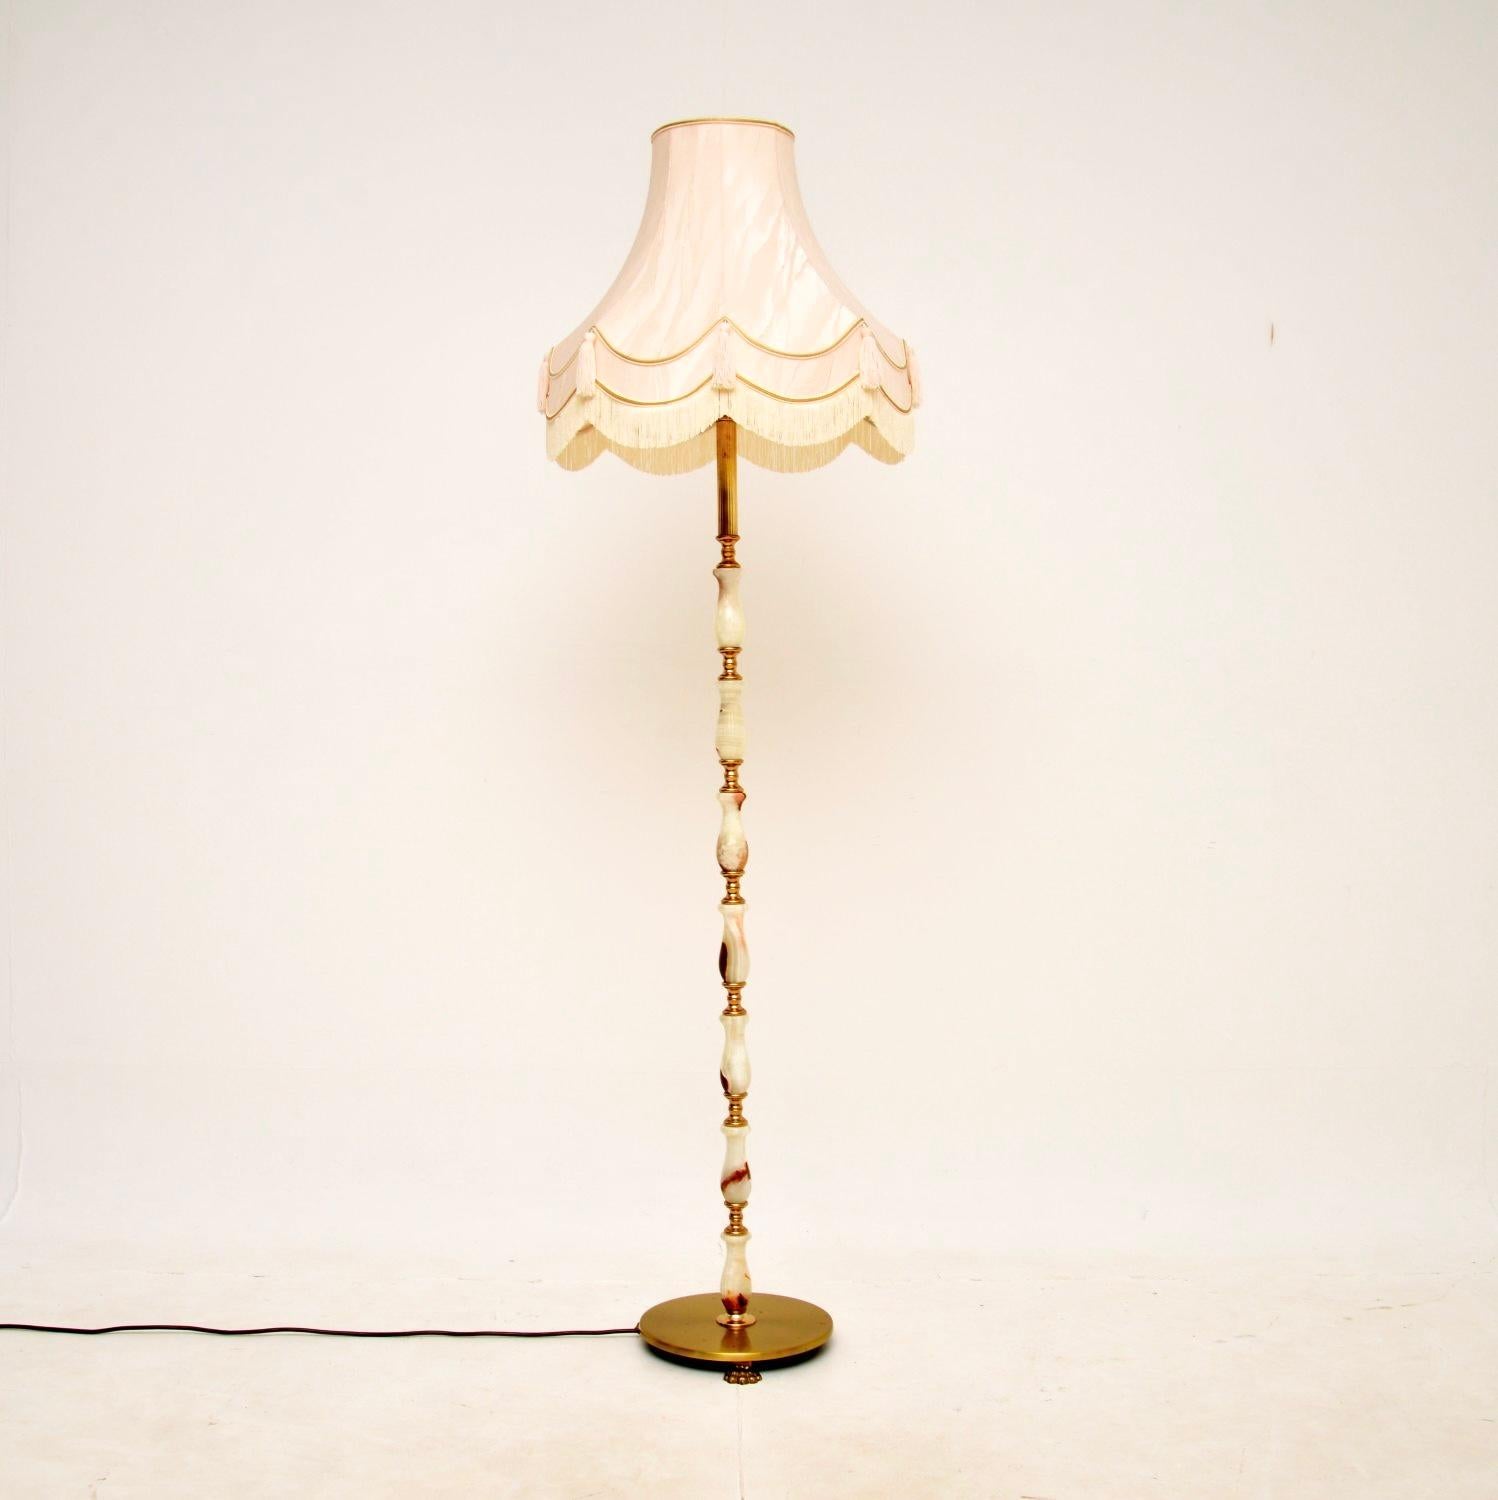 Eine schöne antike französische Stehlampe aus Onyx und Messing. Sie wurde in Frankreich hergestellt und stammt etwa aus den 1930er Jahren.

Sie ist von hervorragender Qualität, der Ständer ist aus massivem Onyx und Messing gefertigt und steht auf